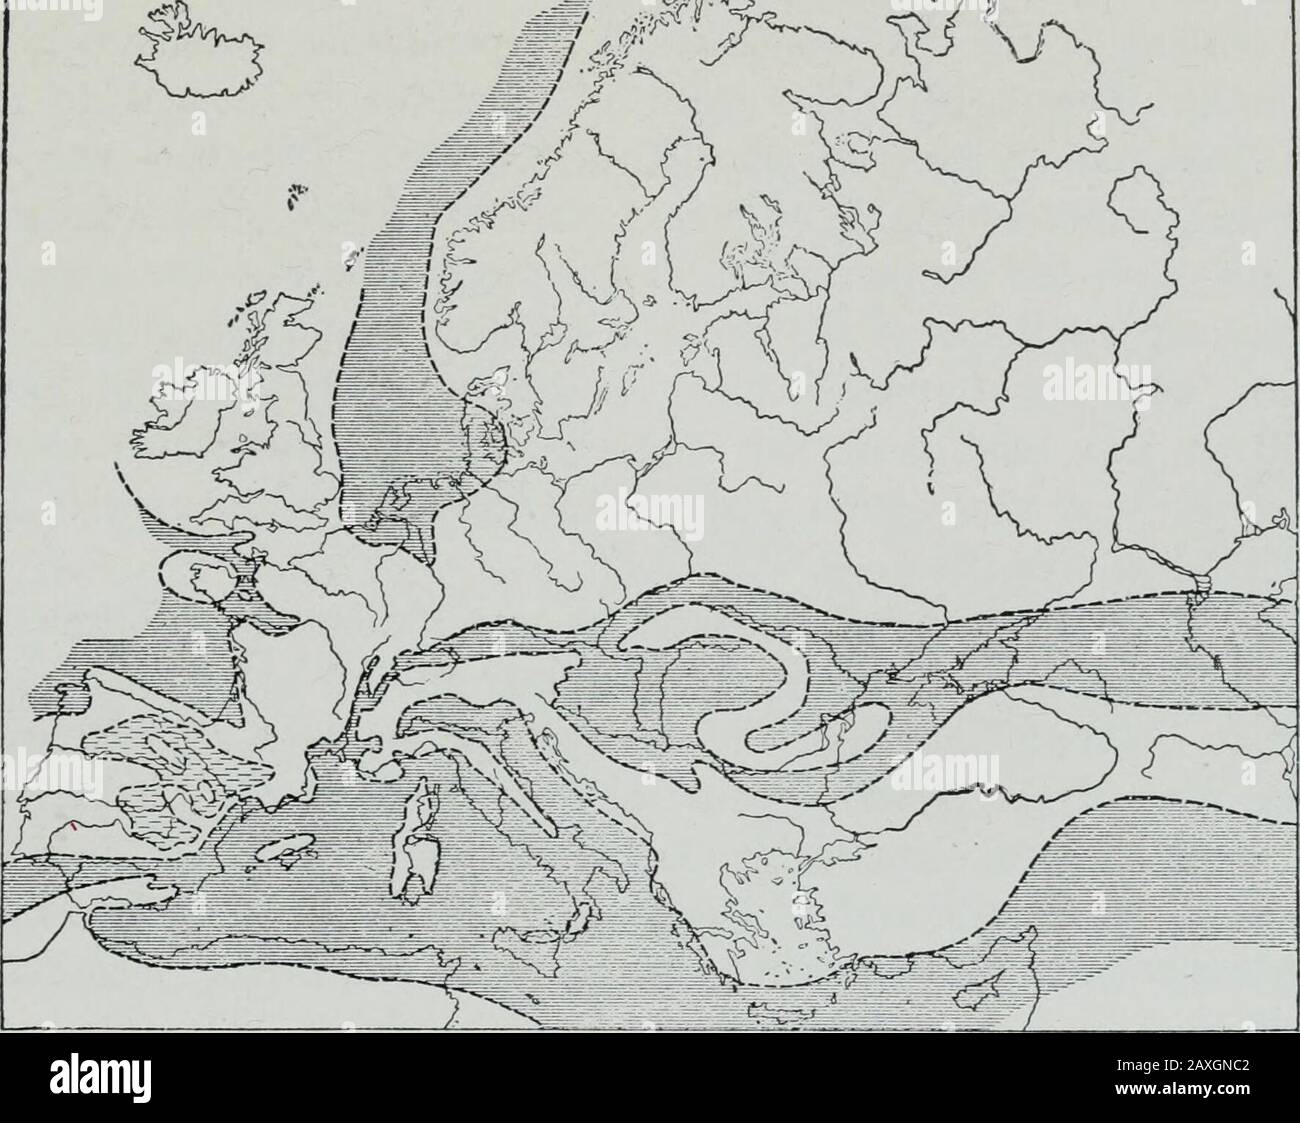 Geologie . die Kommoner klastischen Sedimente.In Süddeutschland (Alpenraum), das Miozän-Molasse (marineunterhalb und nicht-marineblauen oben) übersteht den oligozänen Teil der Thesamreihe (S. 250), und wird in die Schweiz fortgesetzt. Die Ozeanverbindung der Gewässer, in denen die Meeresbetten geleert wurden, erfolgte nach Süden. Entlang der Nordbasis der Alpen (Rigi) finden sich dicke Konglomerate (3900-5900 Fuß) des Earlyand mittleren Miozän-Alters. Ihre Materialien stammten teilweise aus Formationen, die stillsichtbar sind, teilweise aber aus Formationen, die heute nicht zur MIOZÄN-ZEIT auftauchen. 277 Oberfläche.1 Stockfoto